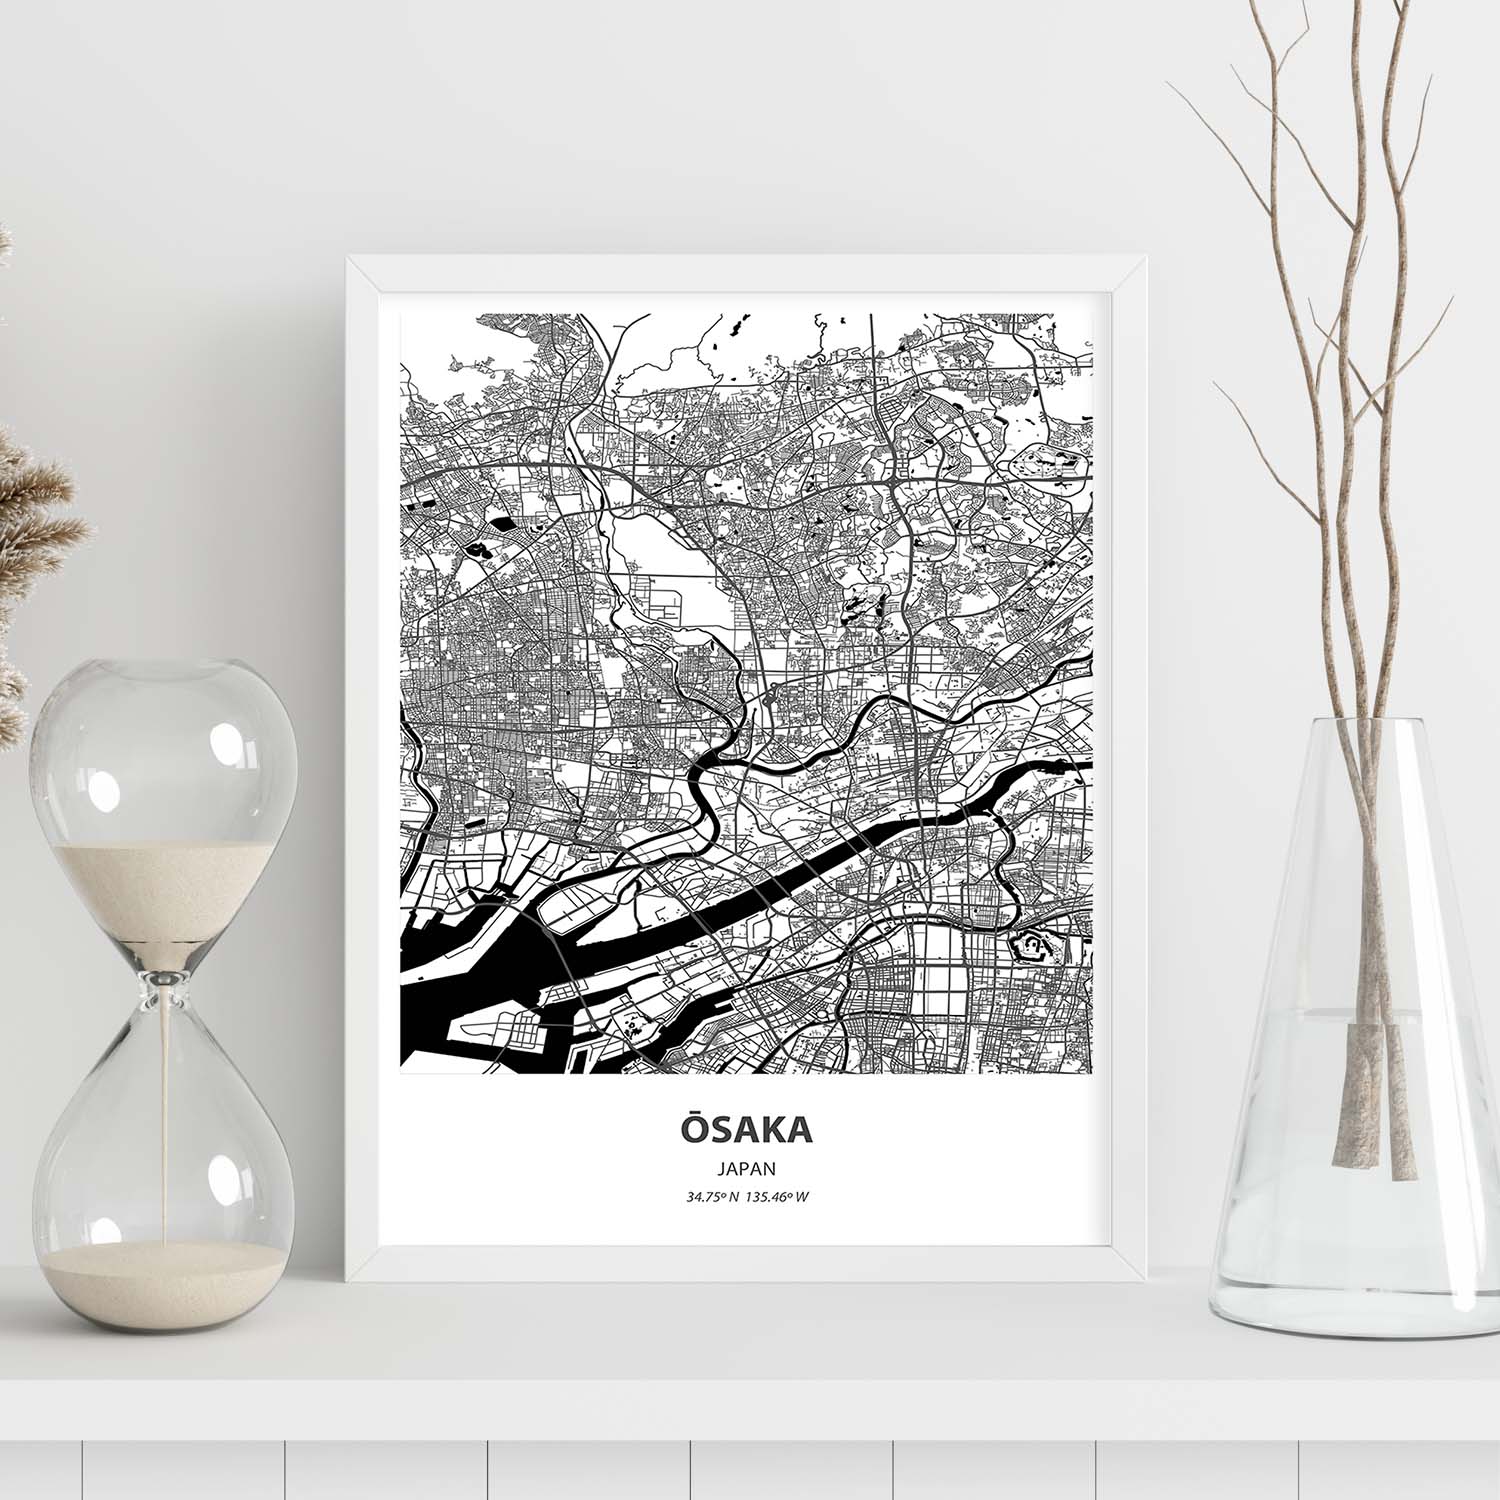 Poster con mapa de Osaka - Japon. Láminas de ciudades de Asia con mares y ríos en color negro.-Artwork-Nacnic-Nacnic Estudio SL